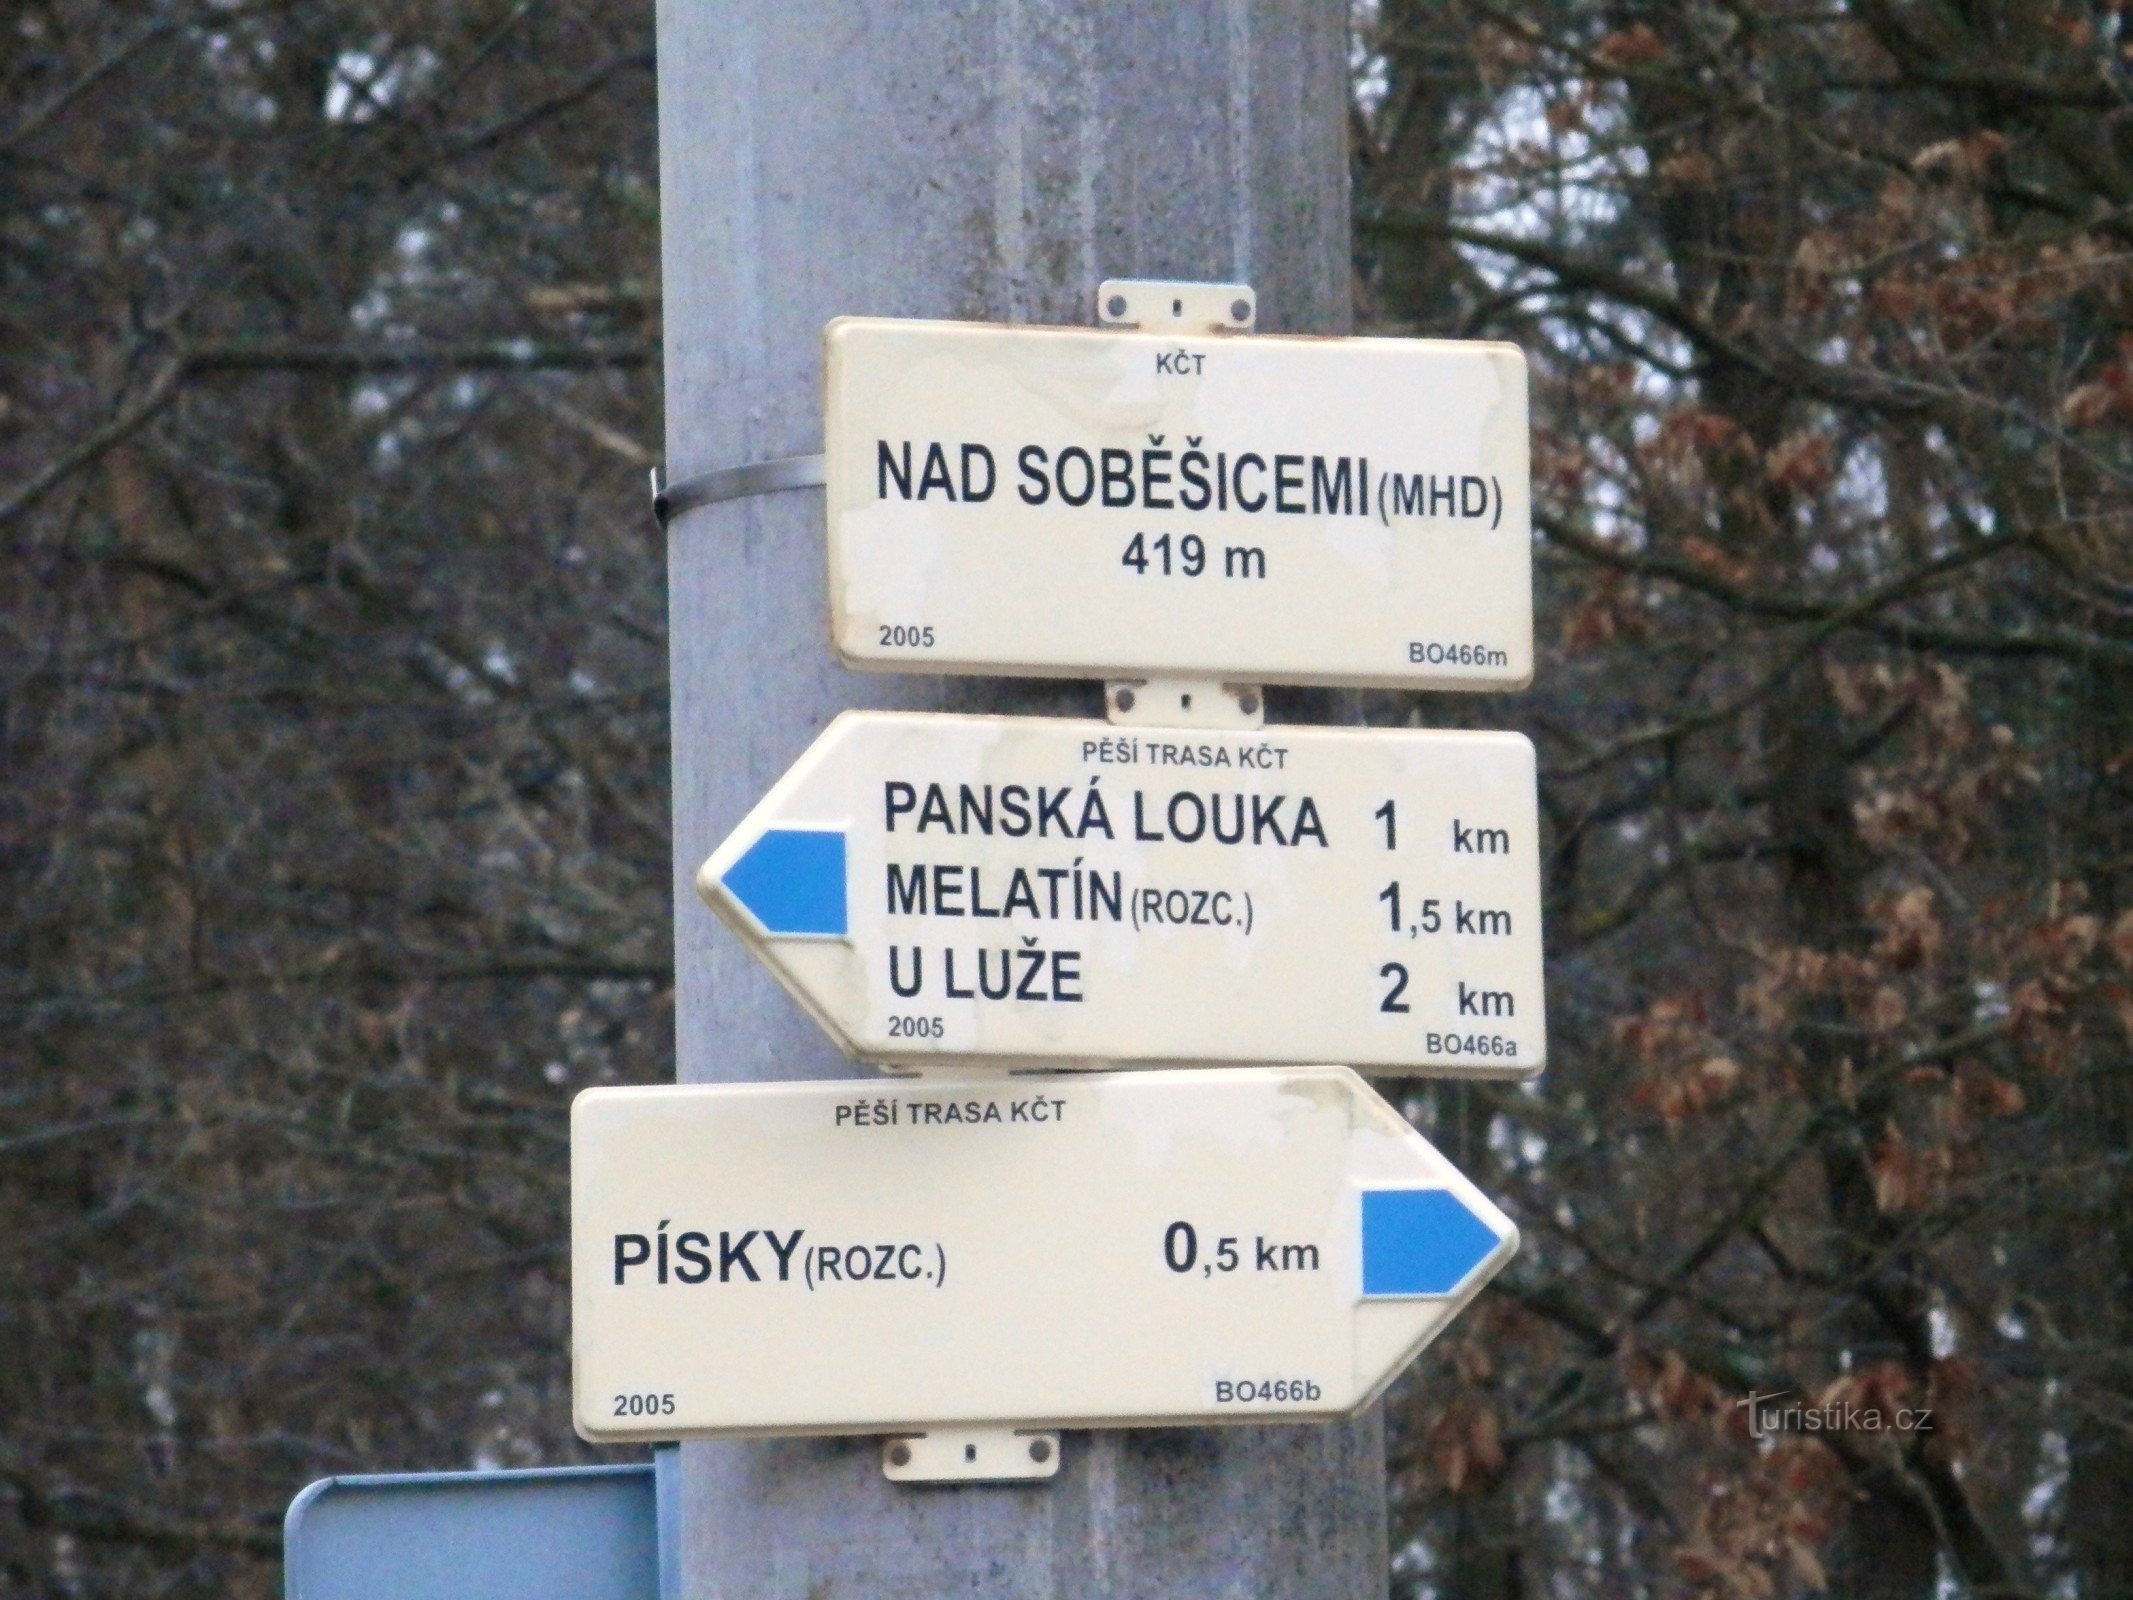 Nad Soběšicemi (offentlig transport) - krydset mellem afmærkede turistruter